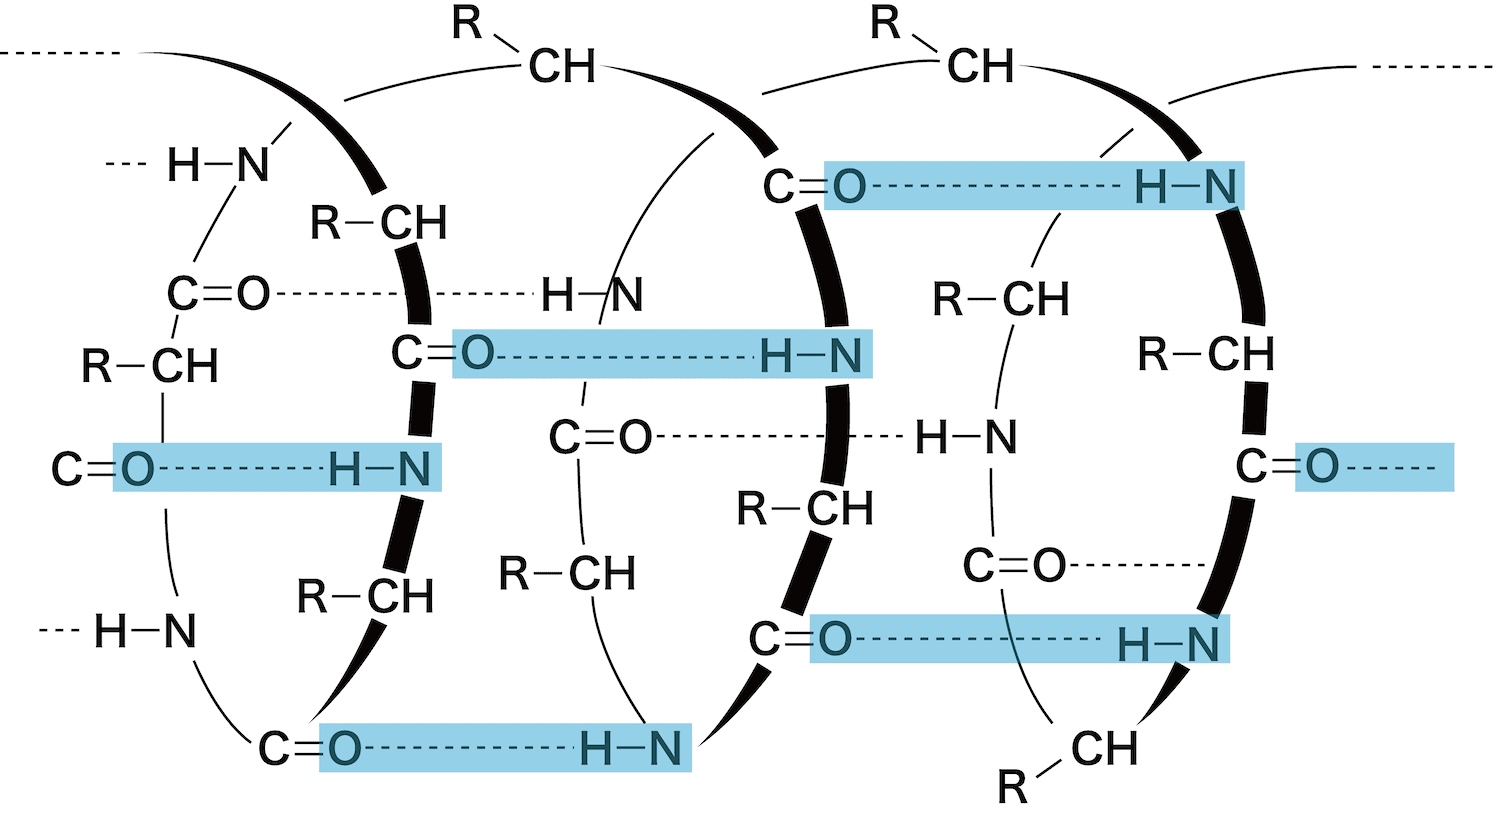 タンパク質の一次構造 二次構造 Aヘリックス Bシート 三次構造 四次構造 化学のグルメ